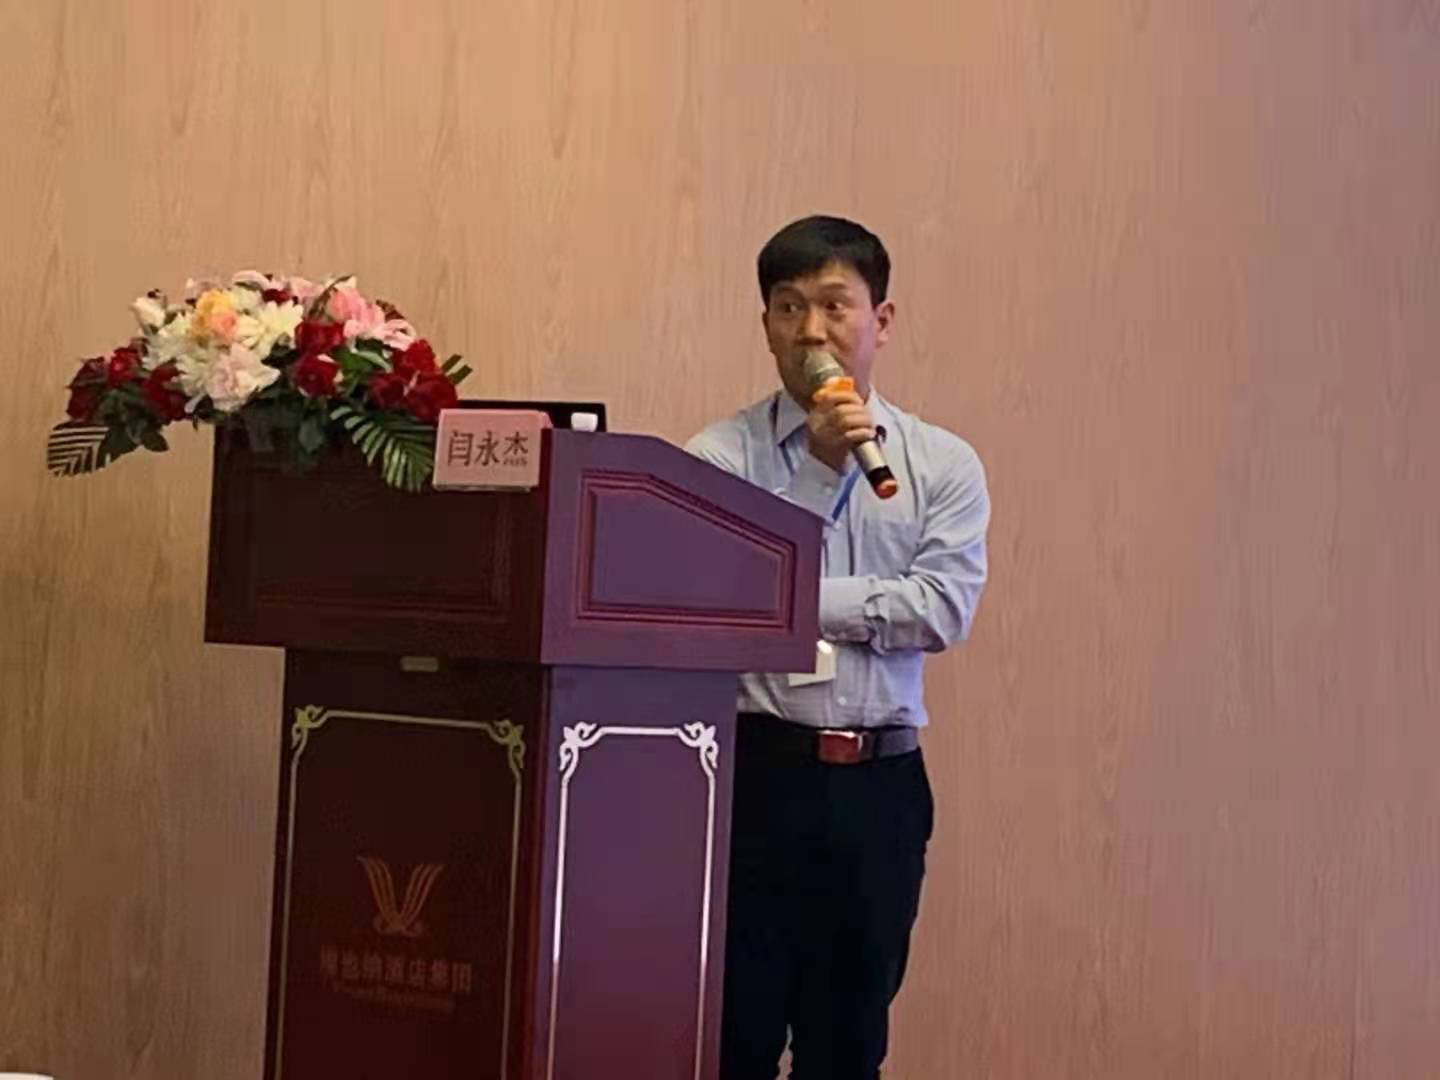 三責新材は2021年5月14日-16日に南京で開催された『第5回マイクロ化学工業技術研究と微細化学品合成応用シンポジウム』に参加した